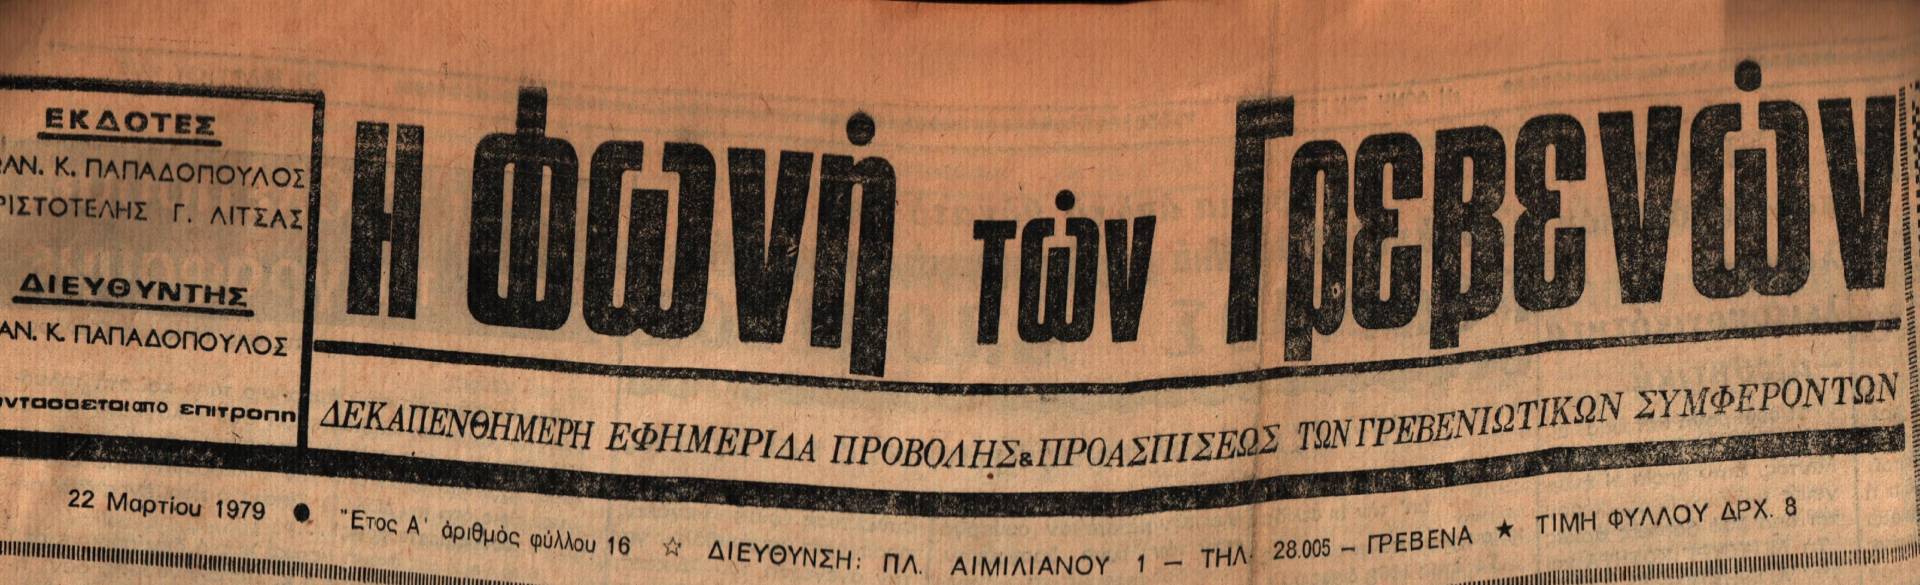 22 Μαρτίου 1979: Η ιστορία των Γρεβενών μέσα από τον Τοπικό Τύπο.Σήμερα:Πραγματοποιείται διαγωνισμός δοκίμων πυροσβεστών